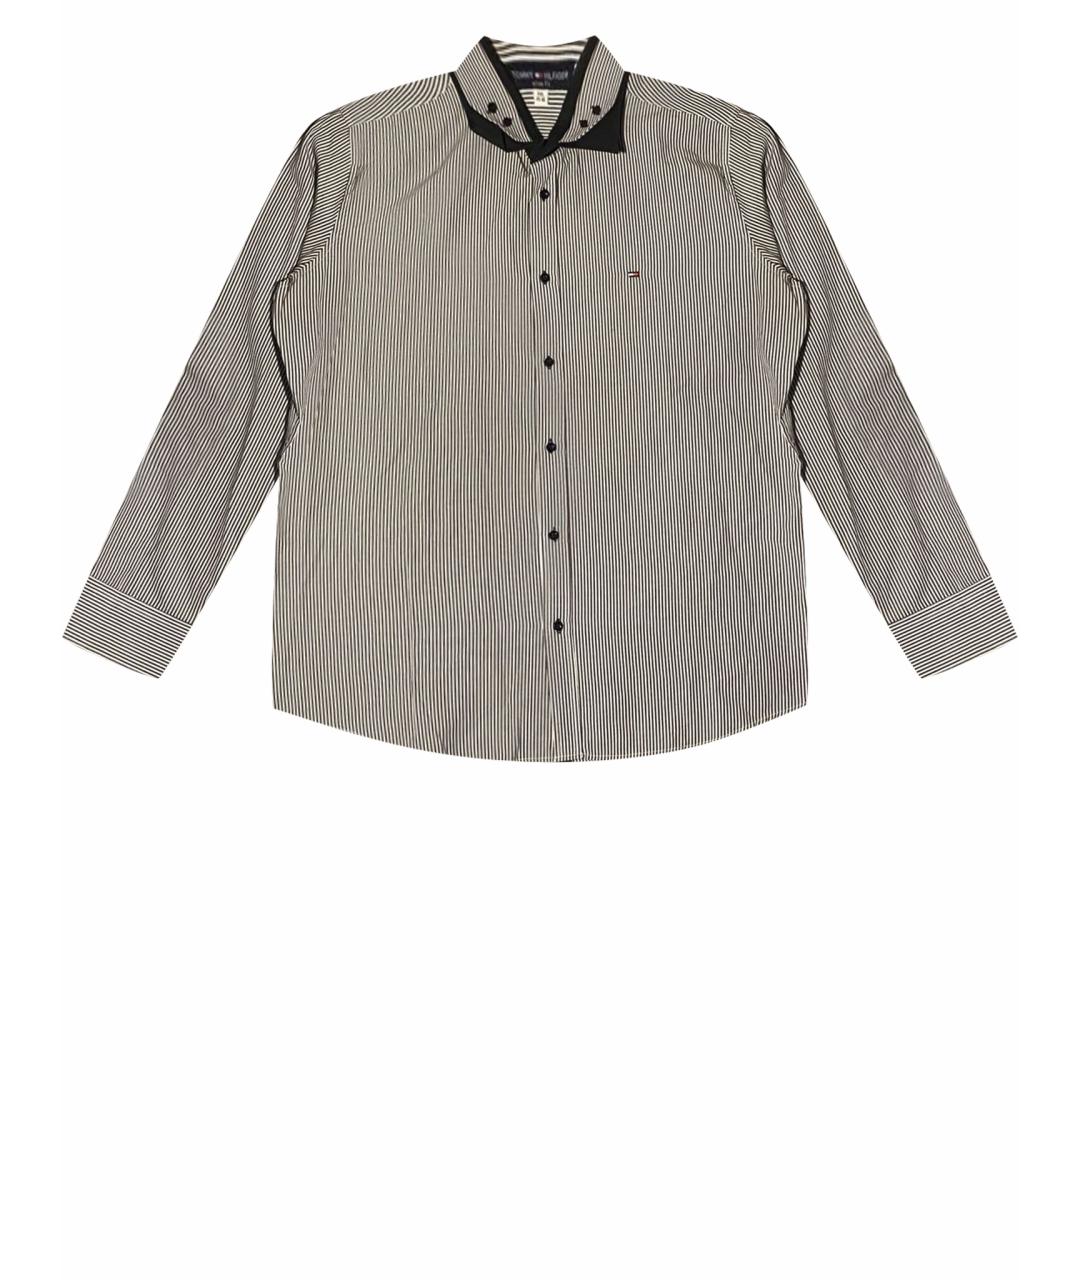 TOMMY HILFIGER Антрацитовая хлопковая классическая рубашка, фото 1